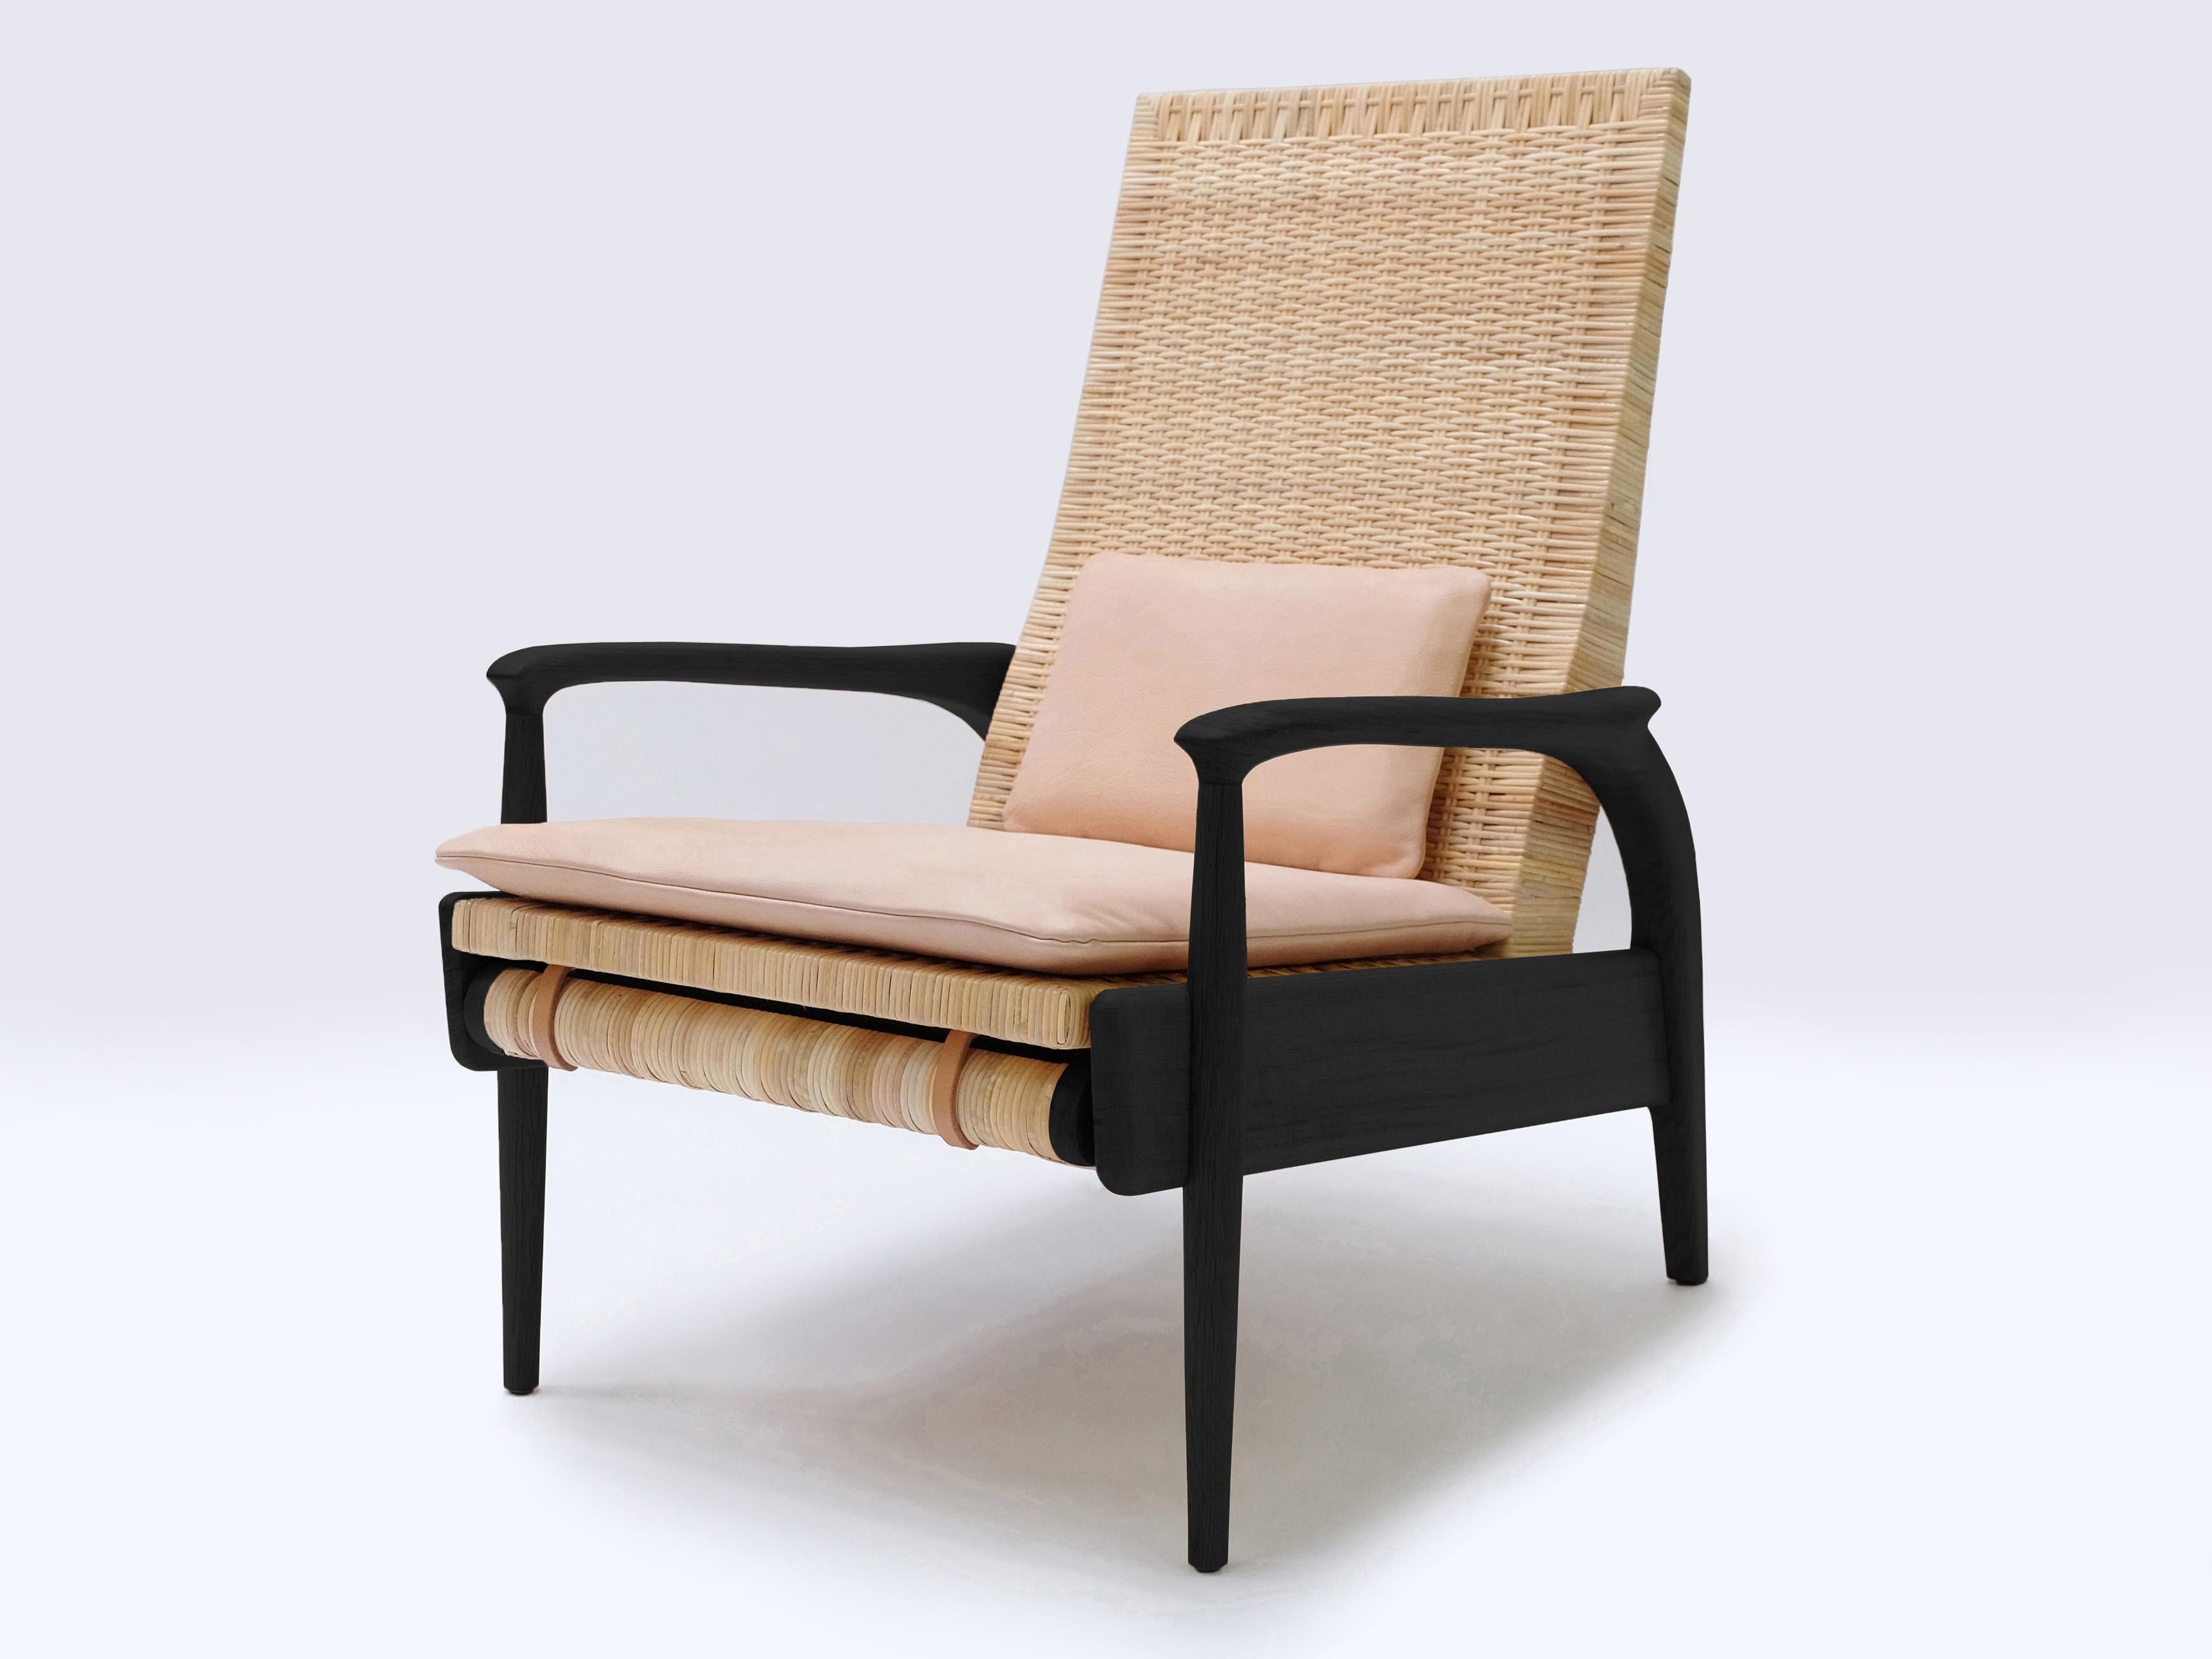 Ein Paar handgefertigte Eco-Lounge-Sessel FENDRIK von Studio180degree
Abgebildet in nachhaltiger, massiver, geschwärzter Eiche und natürlichem, ungefärbtem Schilfrohr

Edel - taktil - raffiniert - nachhaltig
Reclining Eco Lounge Chair FENDRIK ist